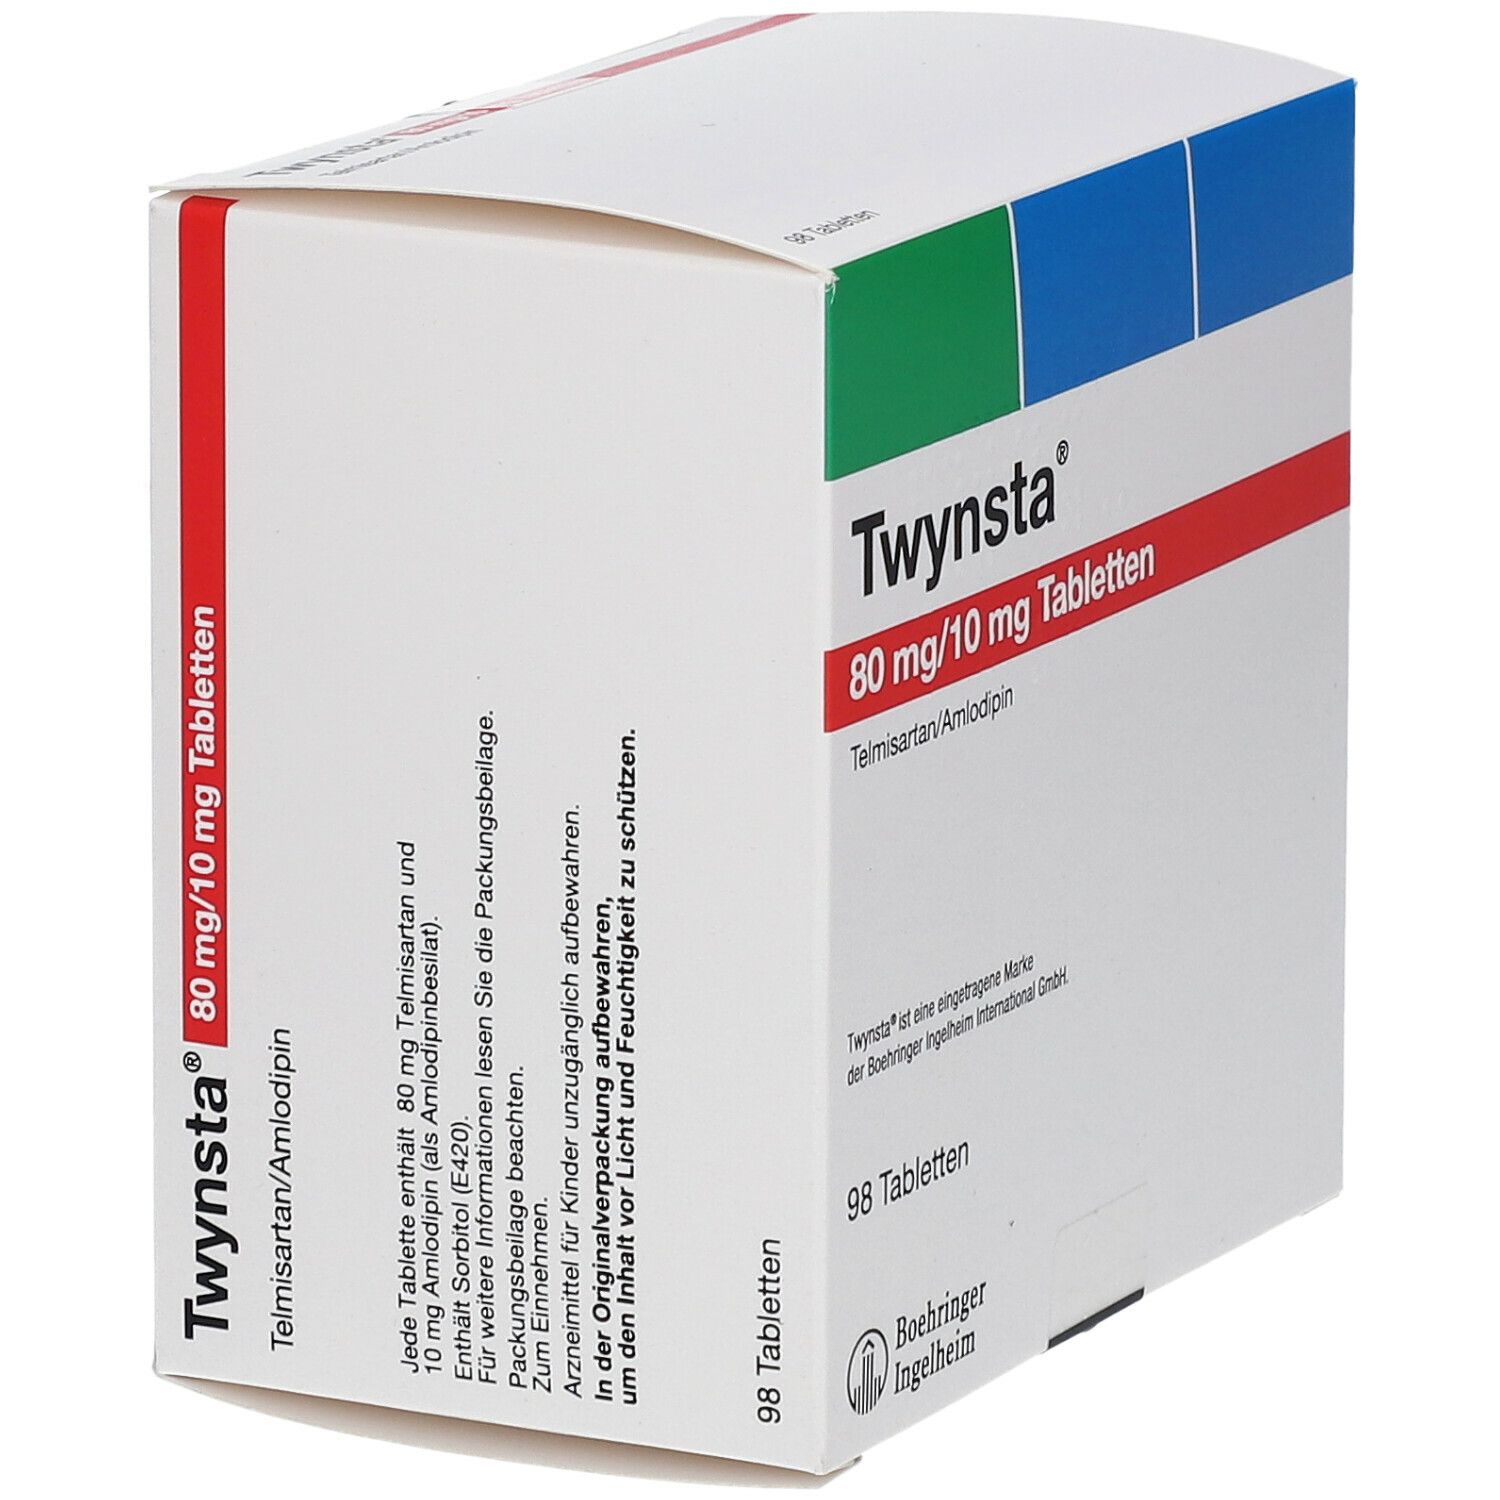 Twynsta 80 mg/10 mg